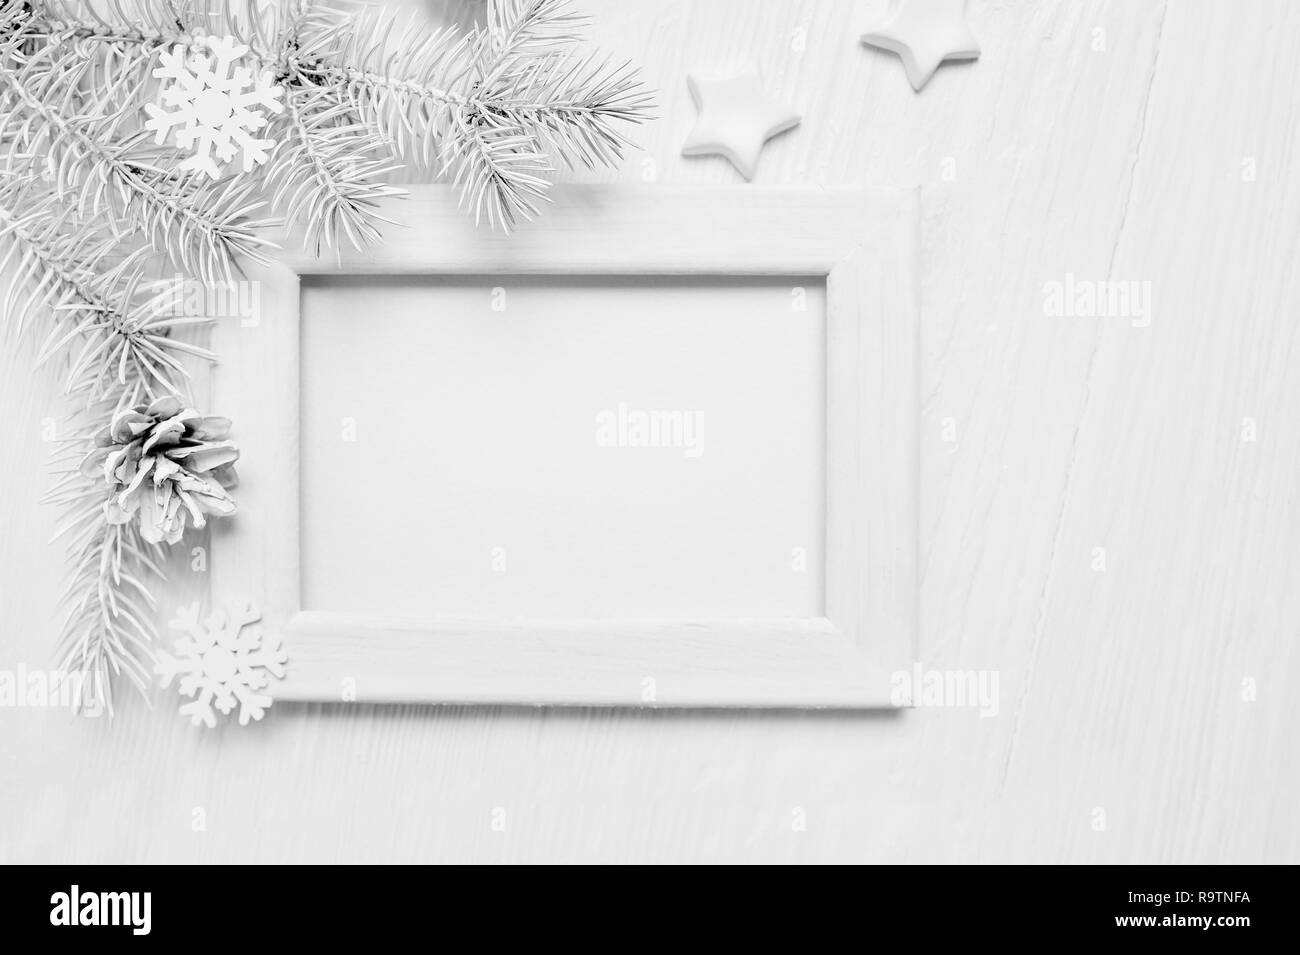 Mockup Weihnachten weiß Baum Holzrahmen mit Platz für Ihren Text, dekorative Sterne, Schneeflocken und Kegel. Flach auf einem weißen Holz- Hintergrund. Ansicht von oben Stockfoto